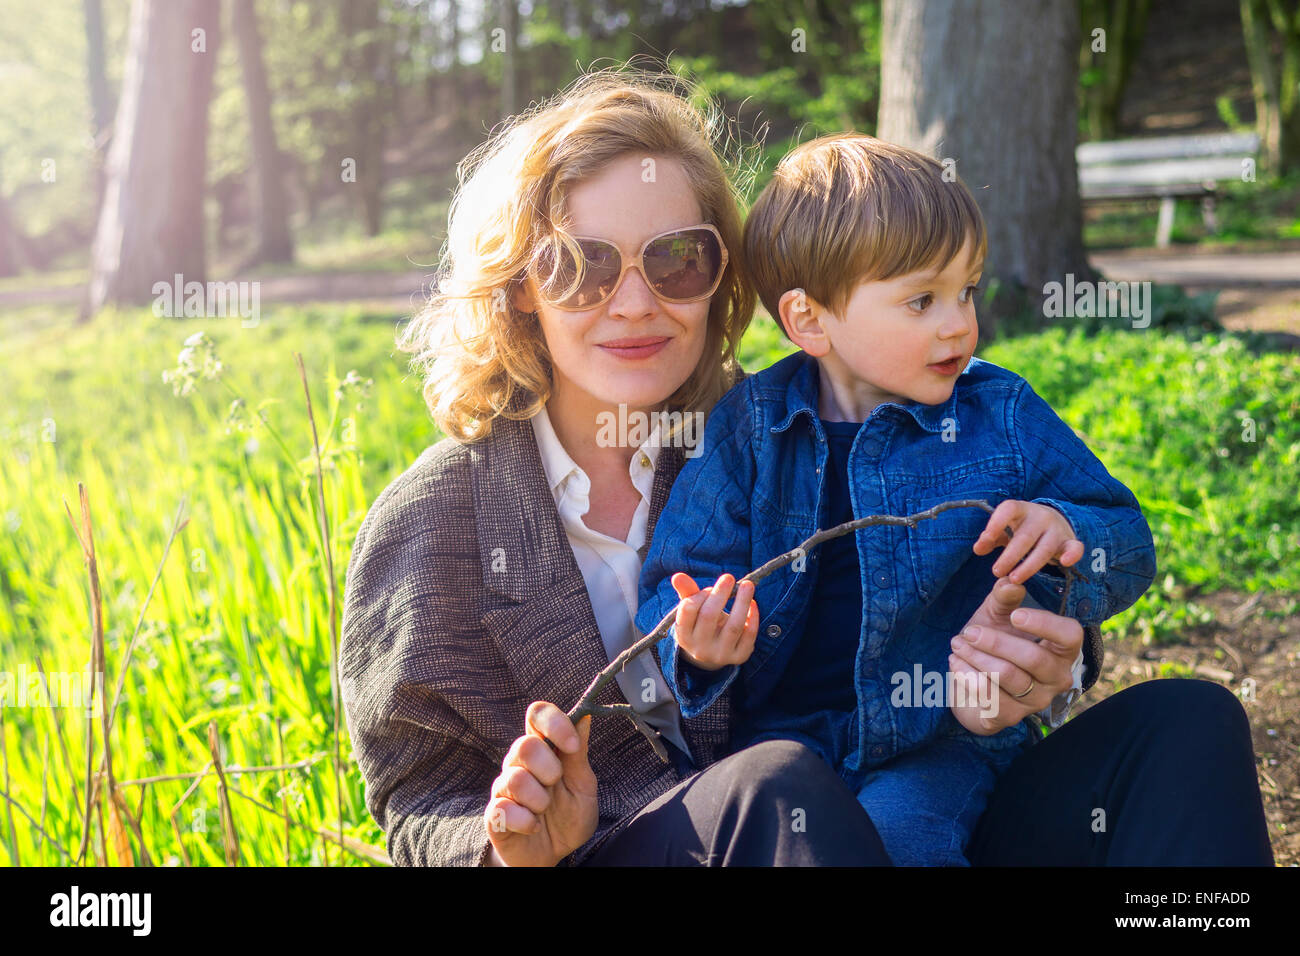 La mère et le fils assis dans un parc de la ville Banque D'Images